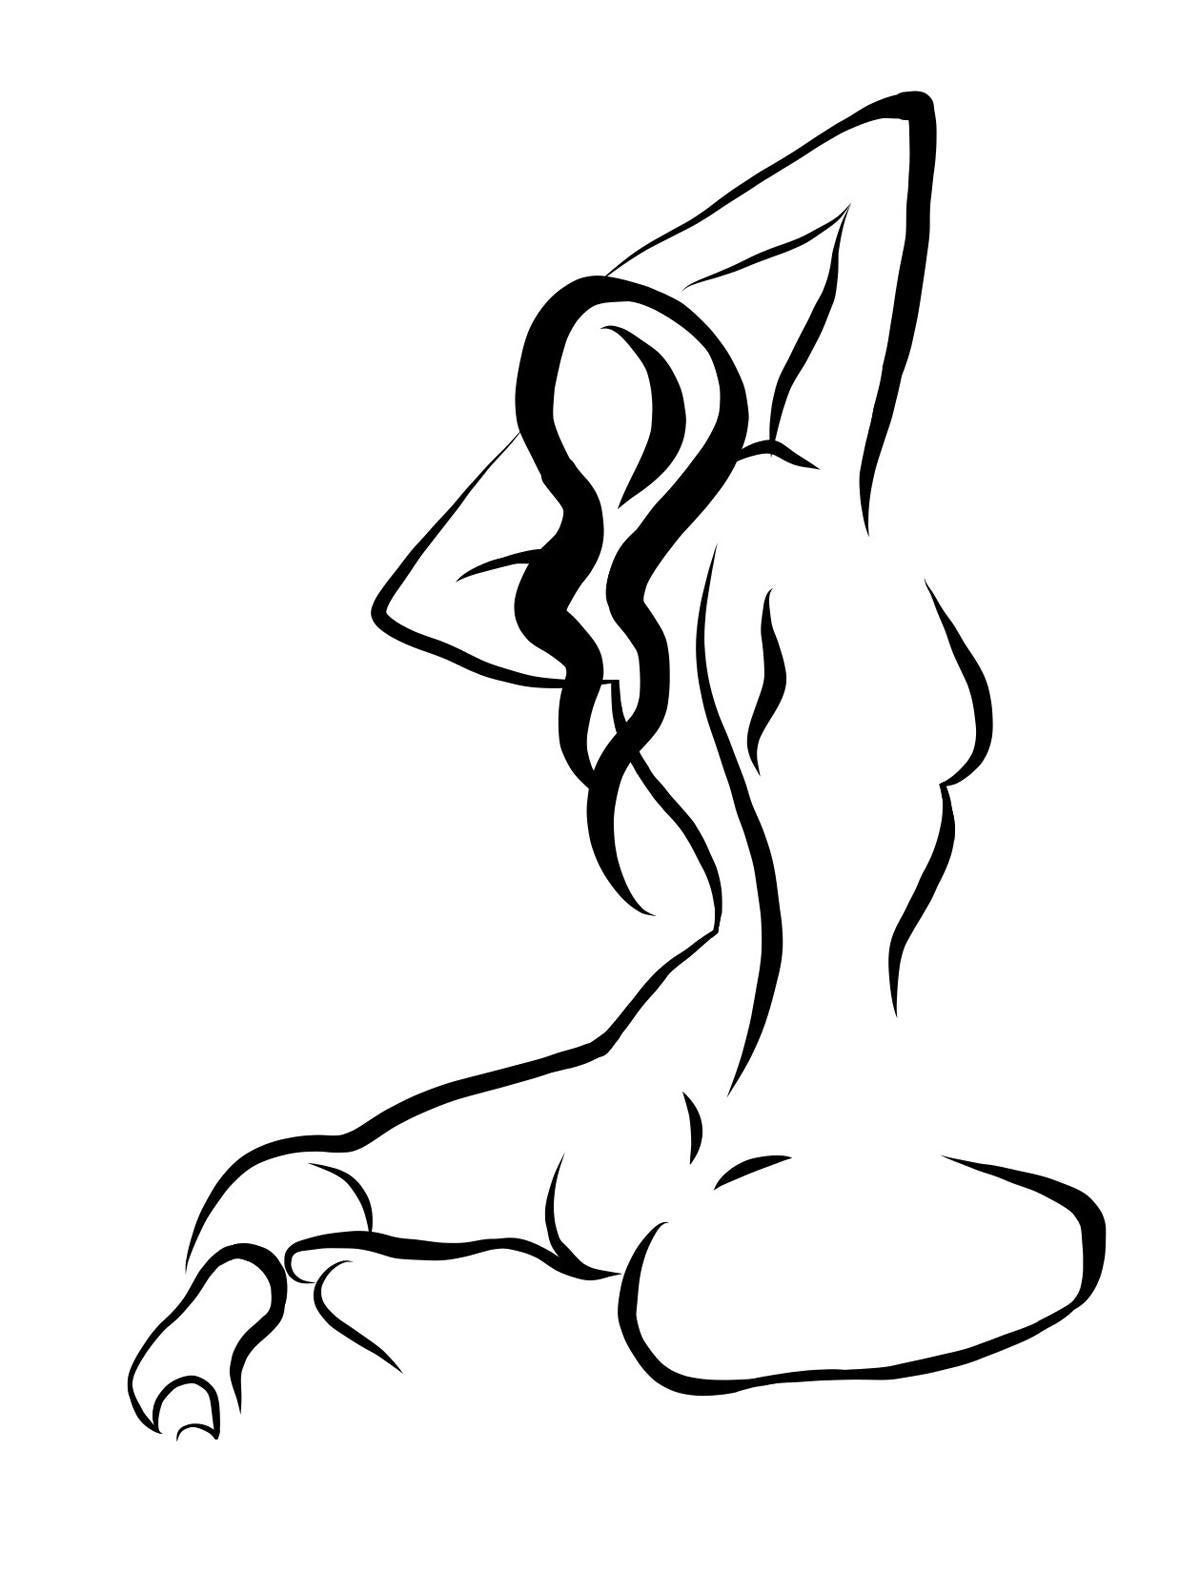 Michael Binkley Nude Print – Haiku #17 - Digitale Vektor-Zeichnung eines sitzenden weiblichen Aktes von hinten